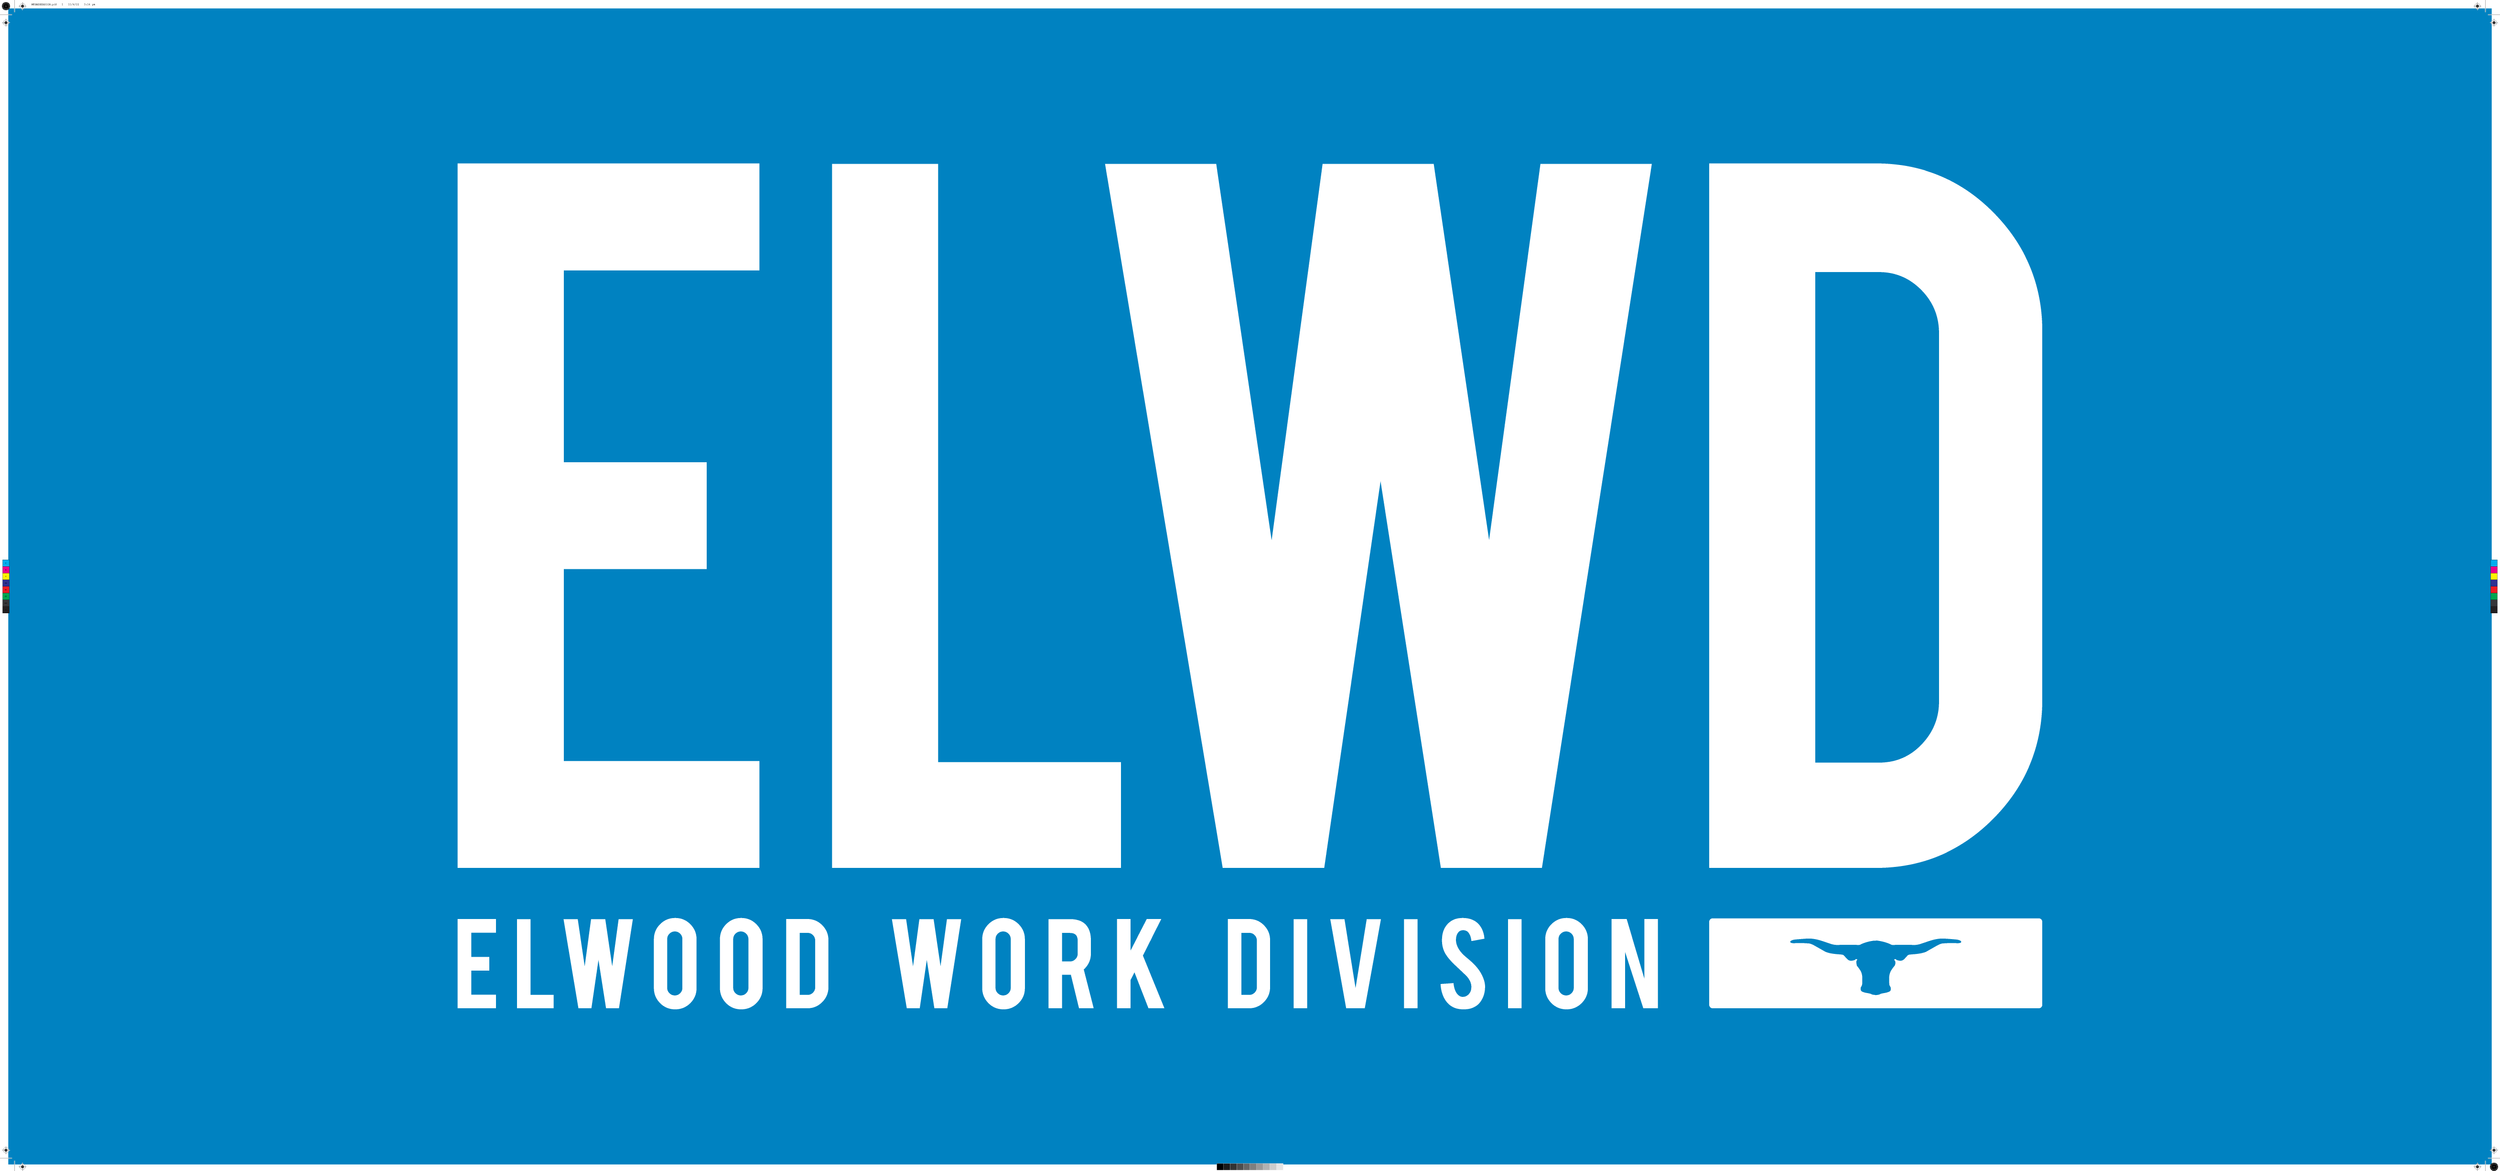 ELWD Logo.png